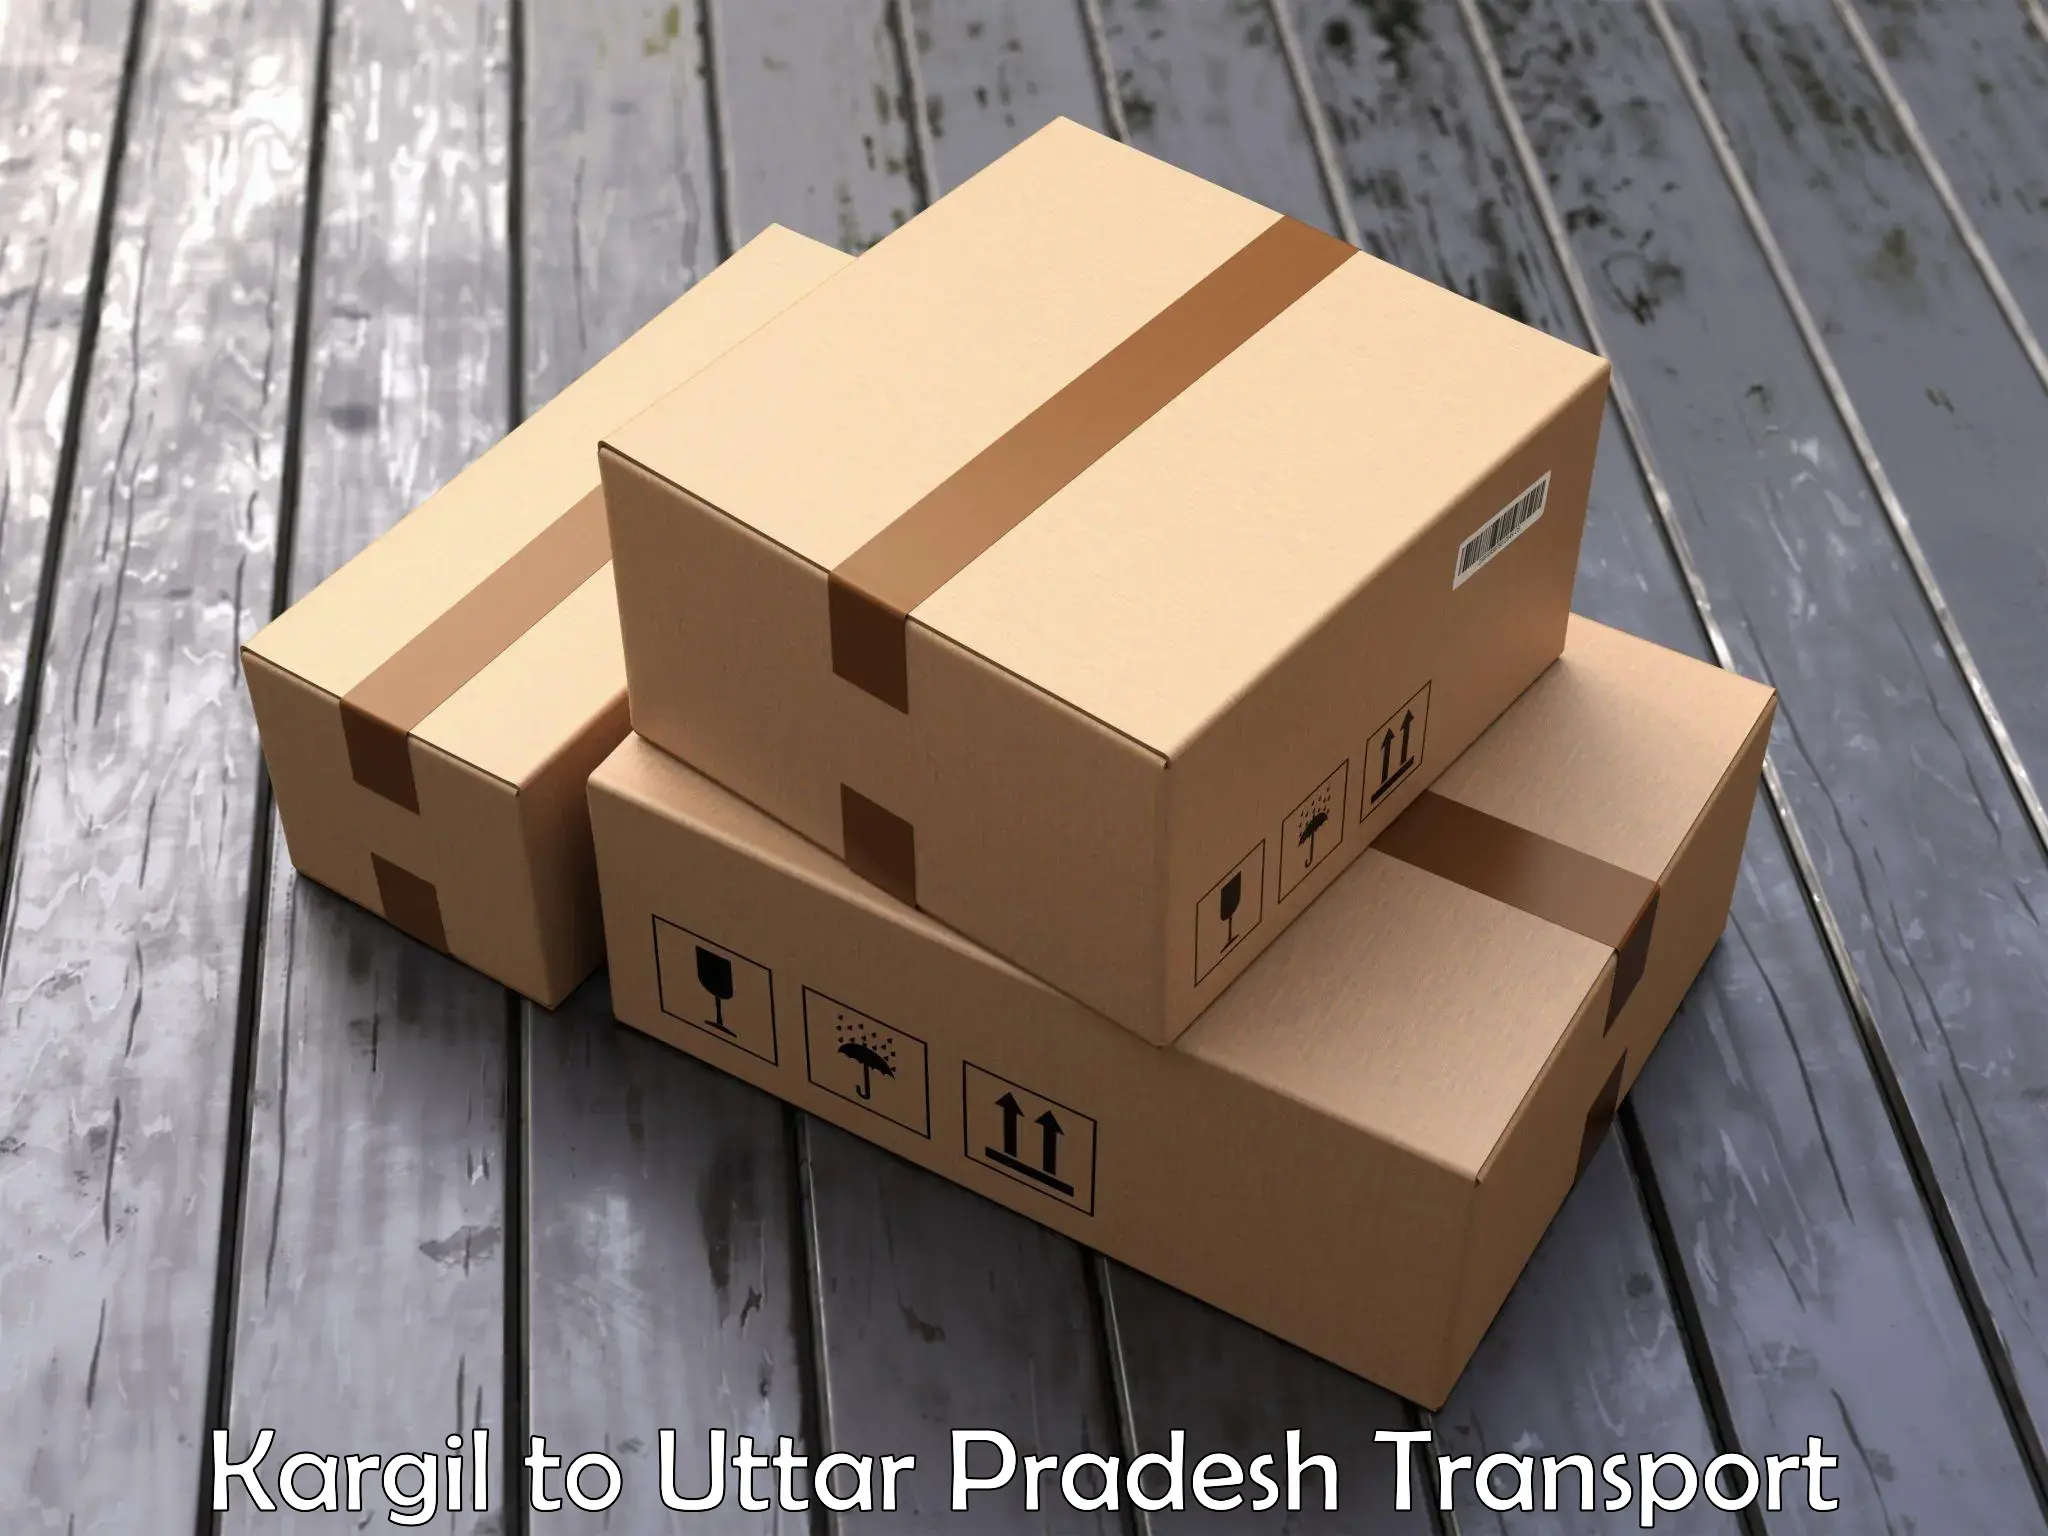 Transportation solution services Kargil to Uttar Pradesh